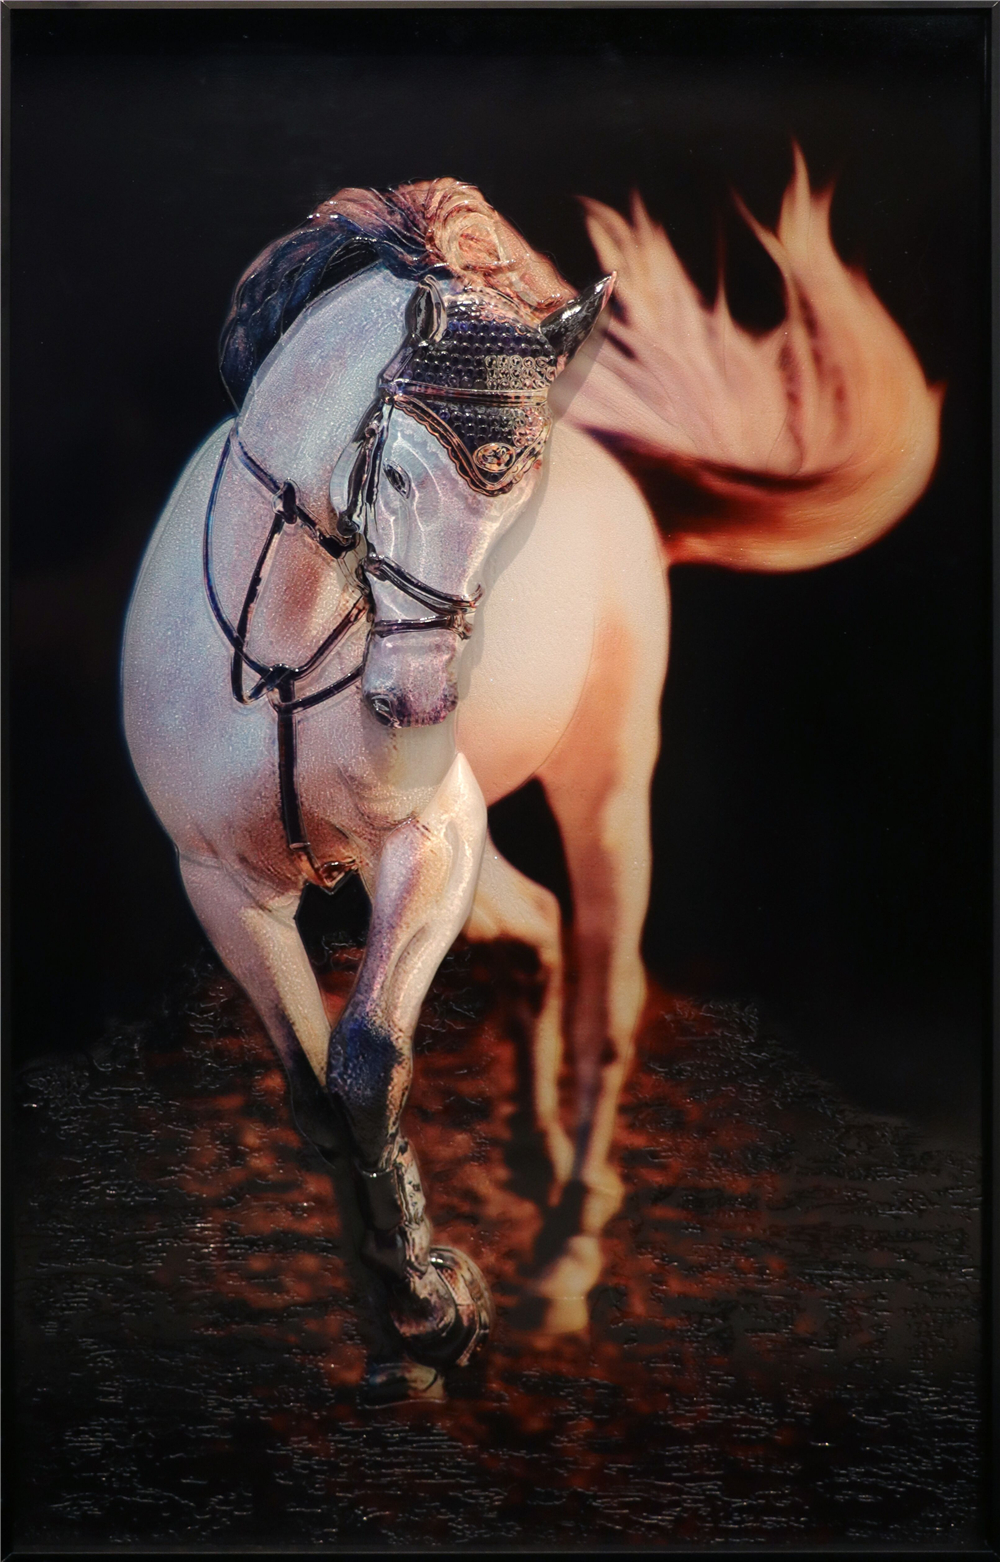 Pintura hecha a mano de acrílico del vidrio de la pared del arte del caballo realista para la decoración casera